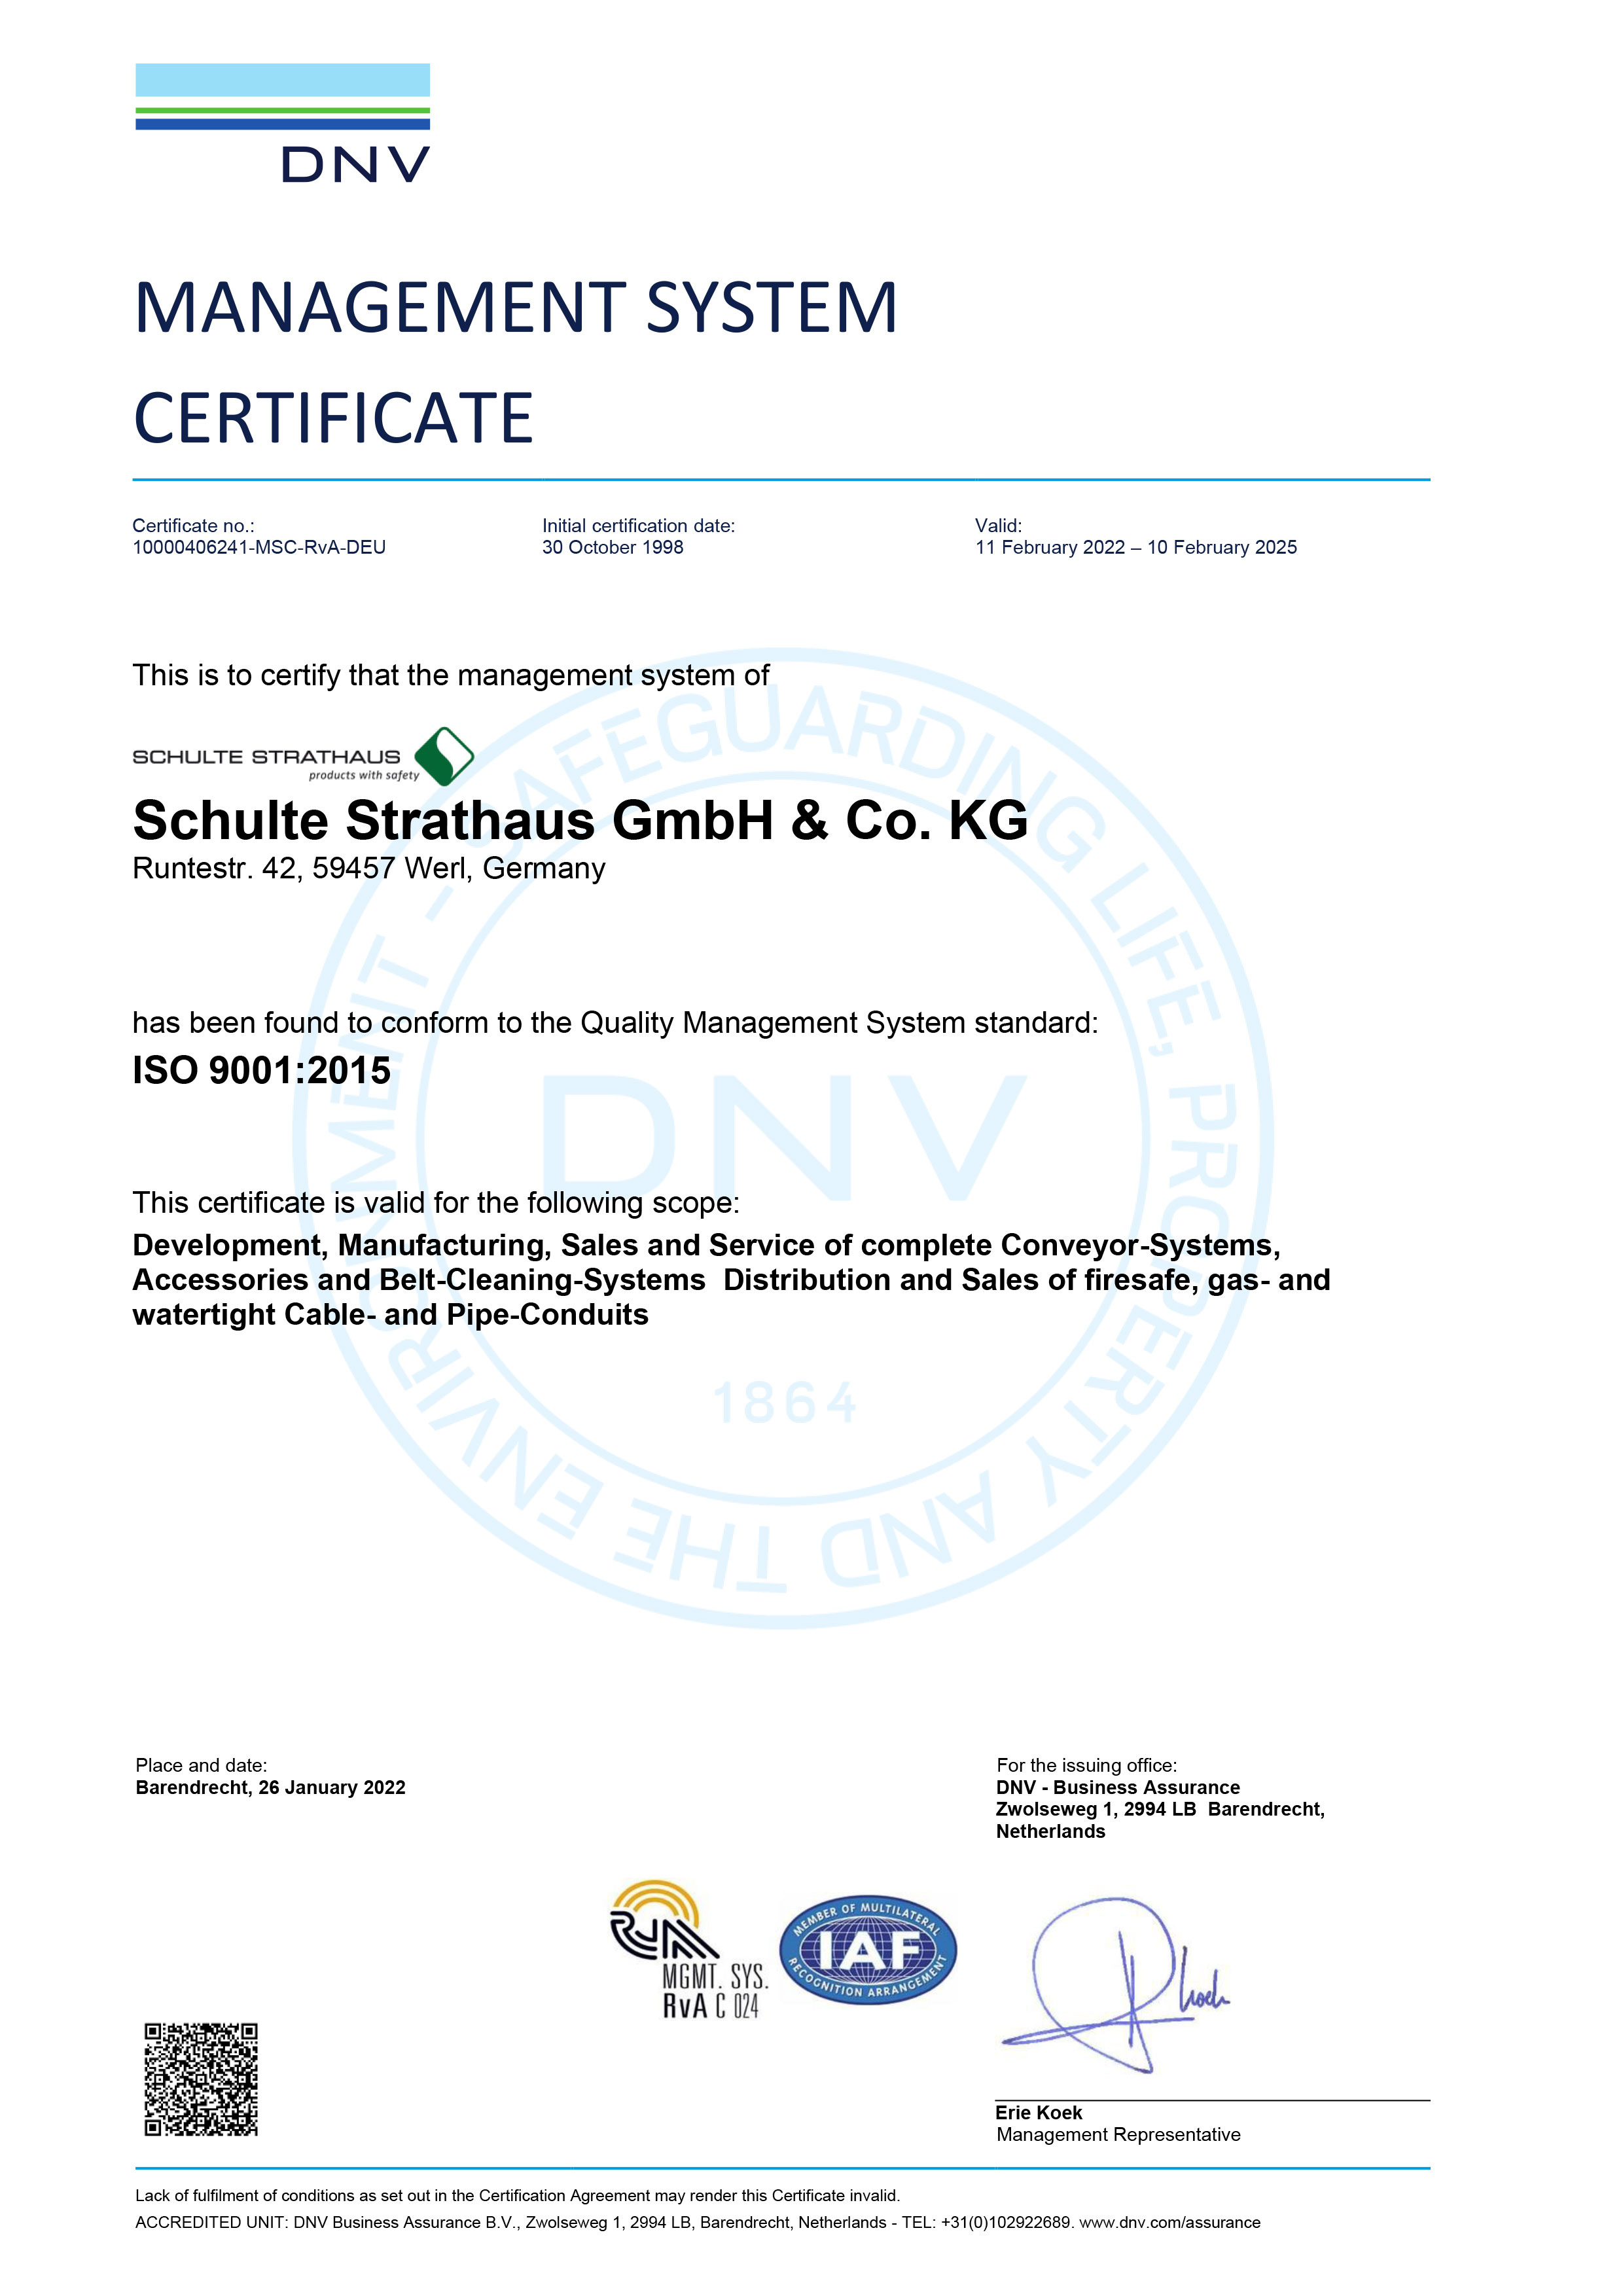 DNV GL Management System Certificate ISO 9001:2015 (EN)